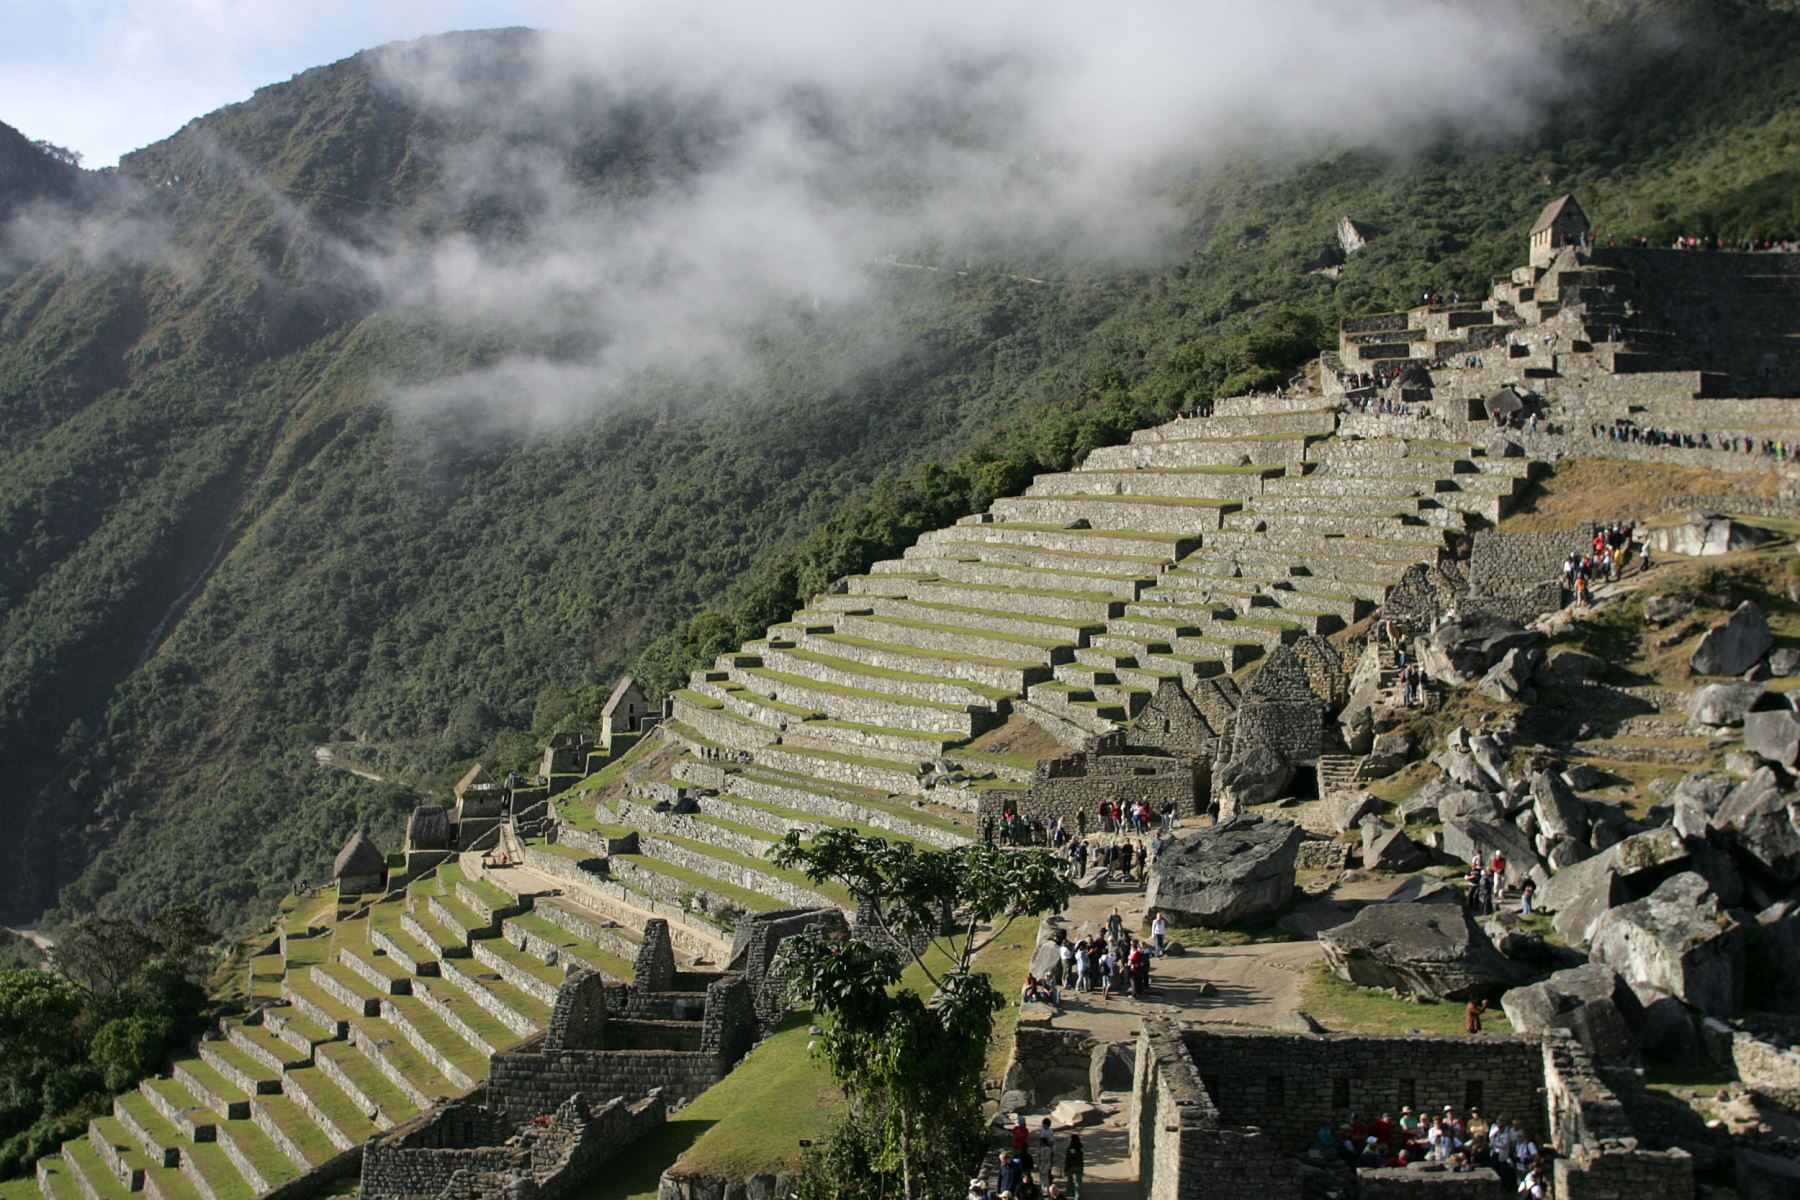 Vista general de la ciudadela Inca de Machu Picchu en el departamento peruano de Cusco, 23 de junio de 2007. AFP